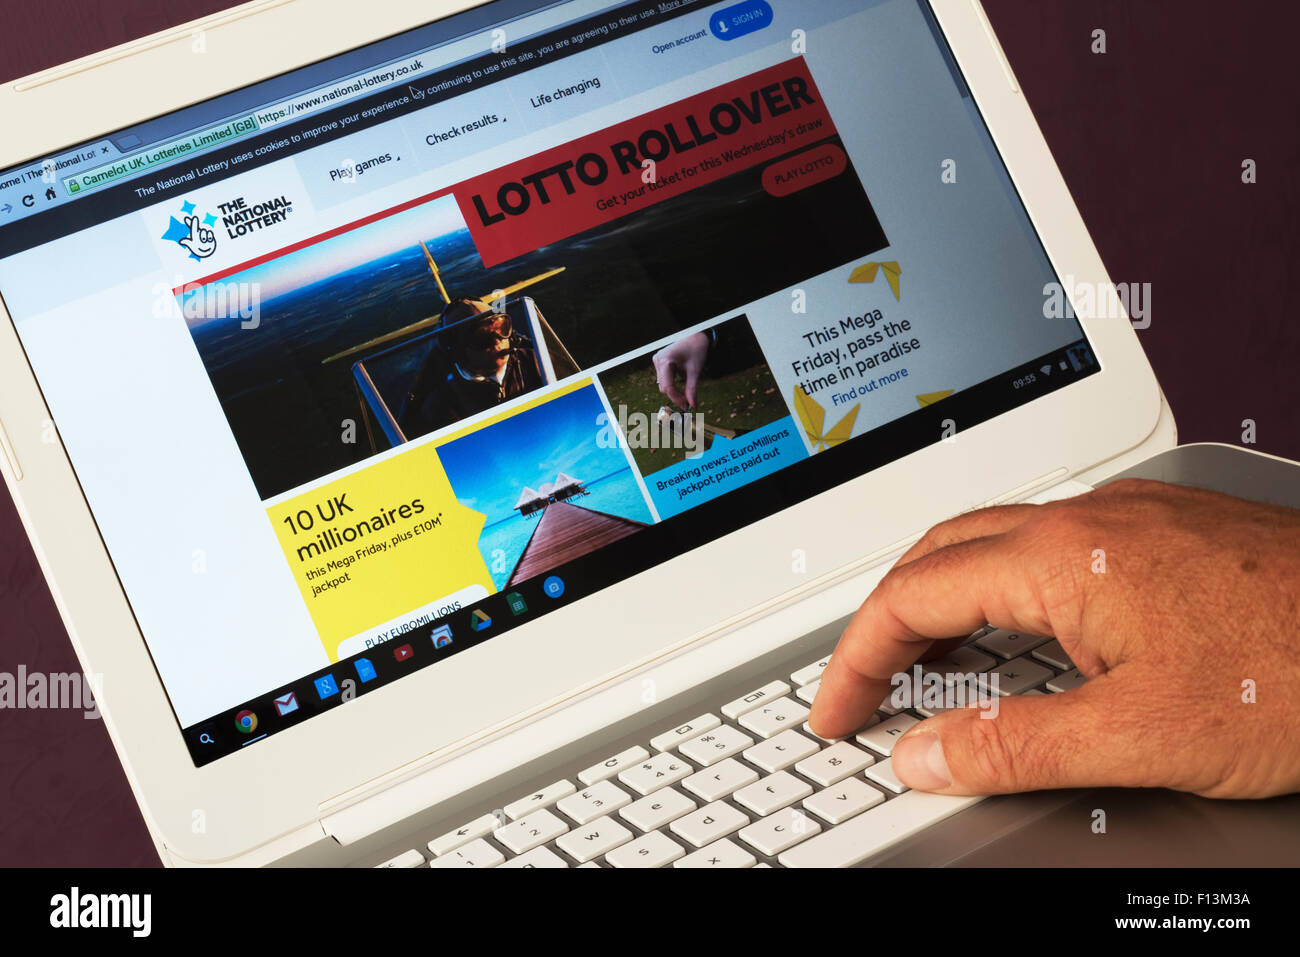 Sito web appartenente alla lotteria nazionale di essere visualizzato su un computer portatile Foto Stock